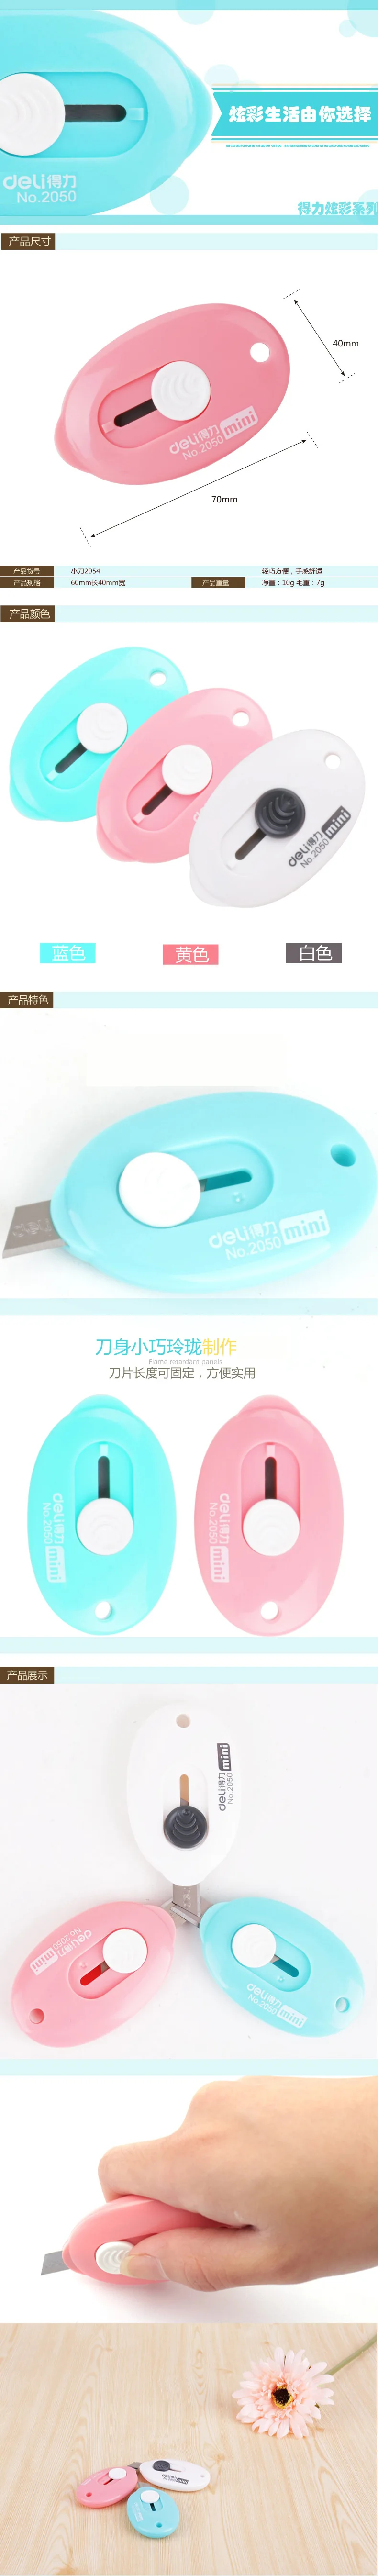 Deli 2050 маленький мини-нож для студентов ручной работы wen ju dao из нержавеющей стали Портативный бытовой Сплит Экспресс-нож